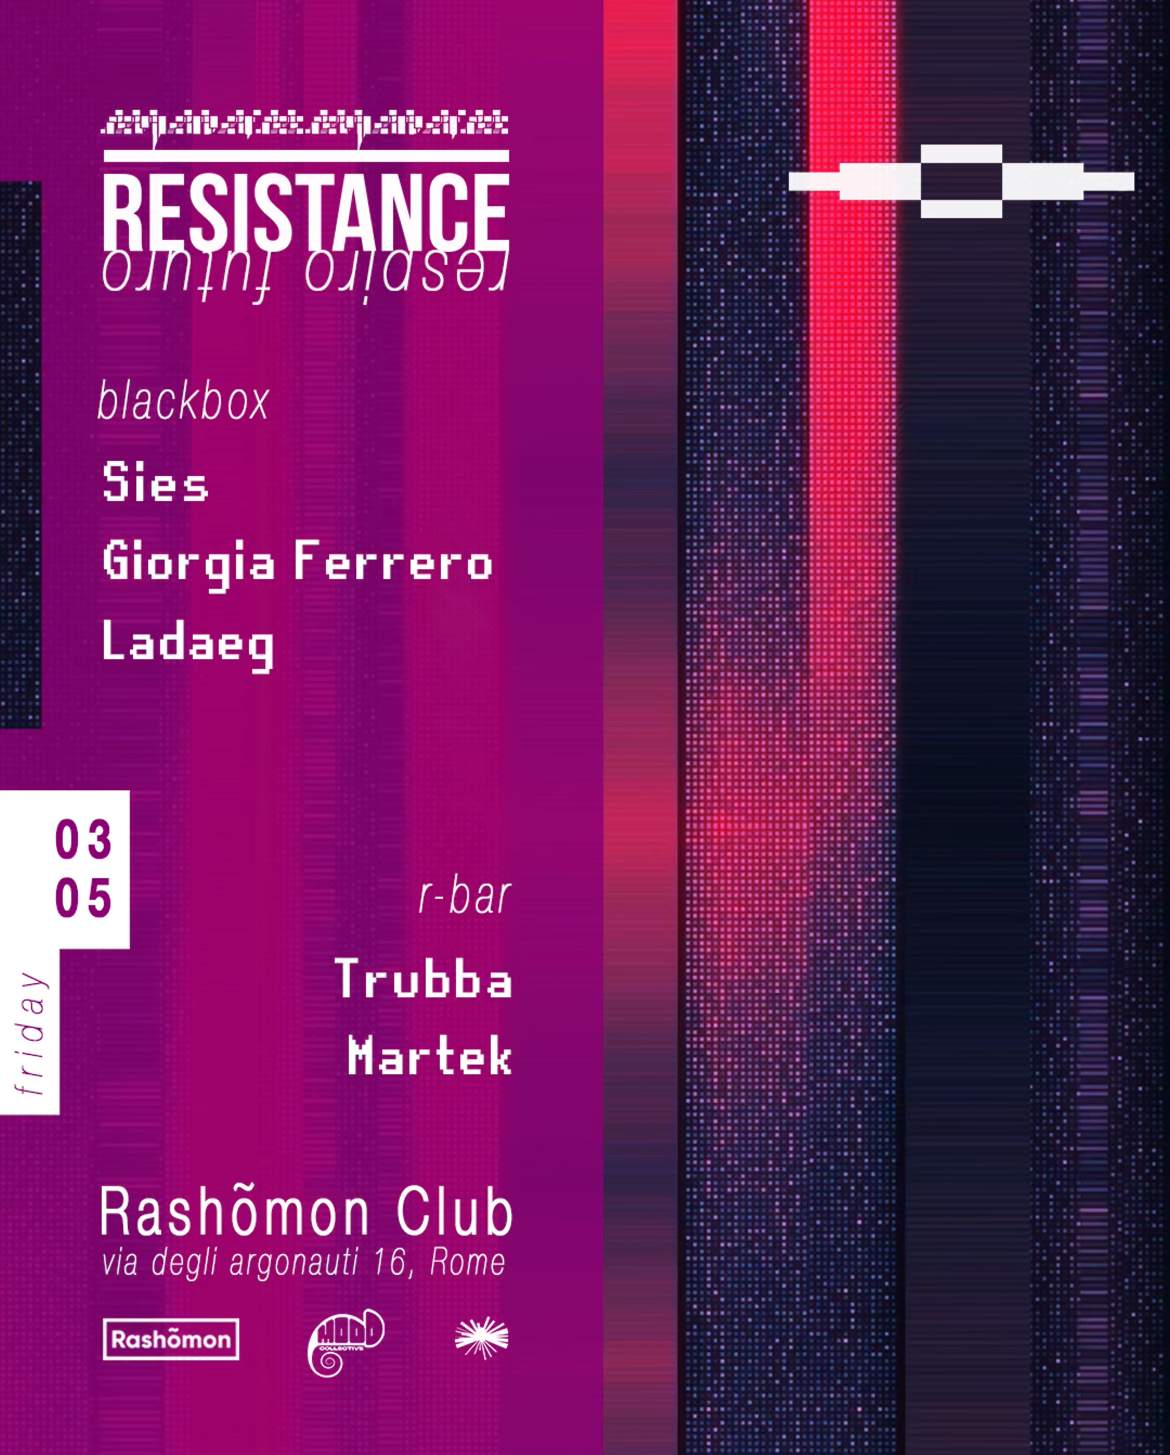 Resistance: Sies, Giorgia Ferrero, Ladaeg - フライヤー裏